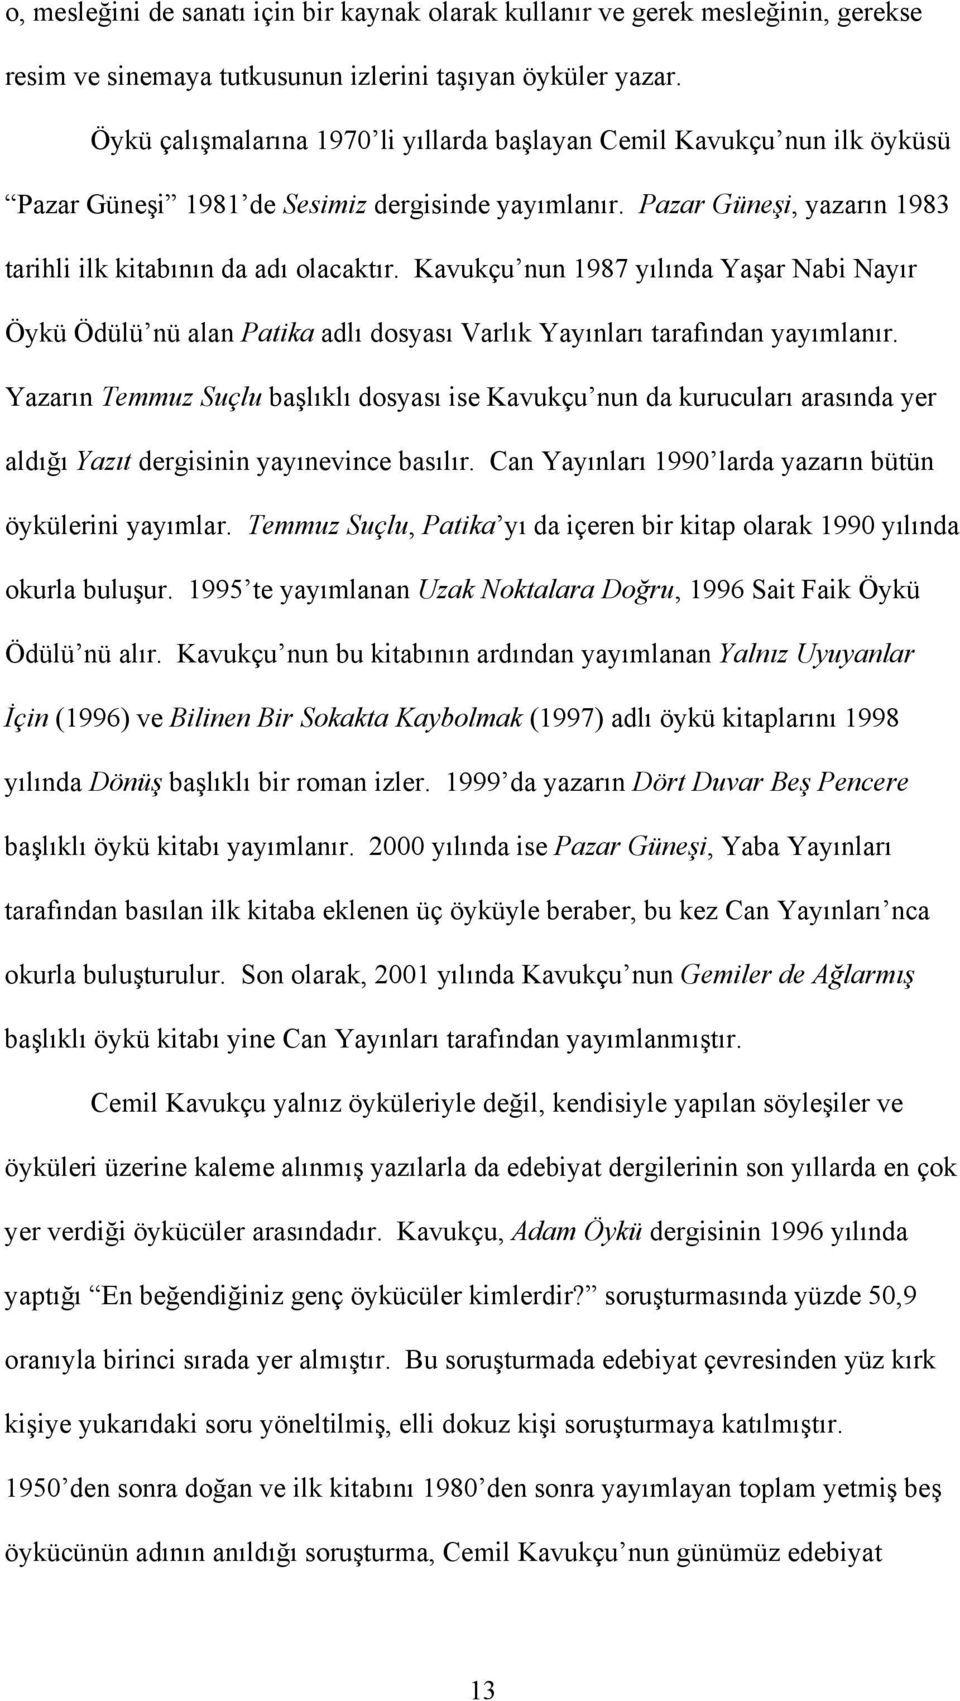 Kavukçu nun 1987 yılında Yaşar Nabi Nayır Öykü Ödülü nü alan Patika adlı dosyası Varlık Yayınları tarafından yayımlanır.